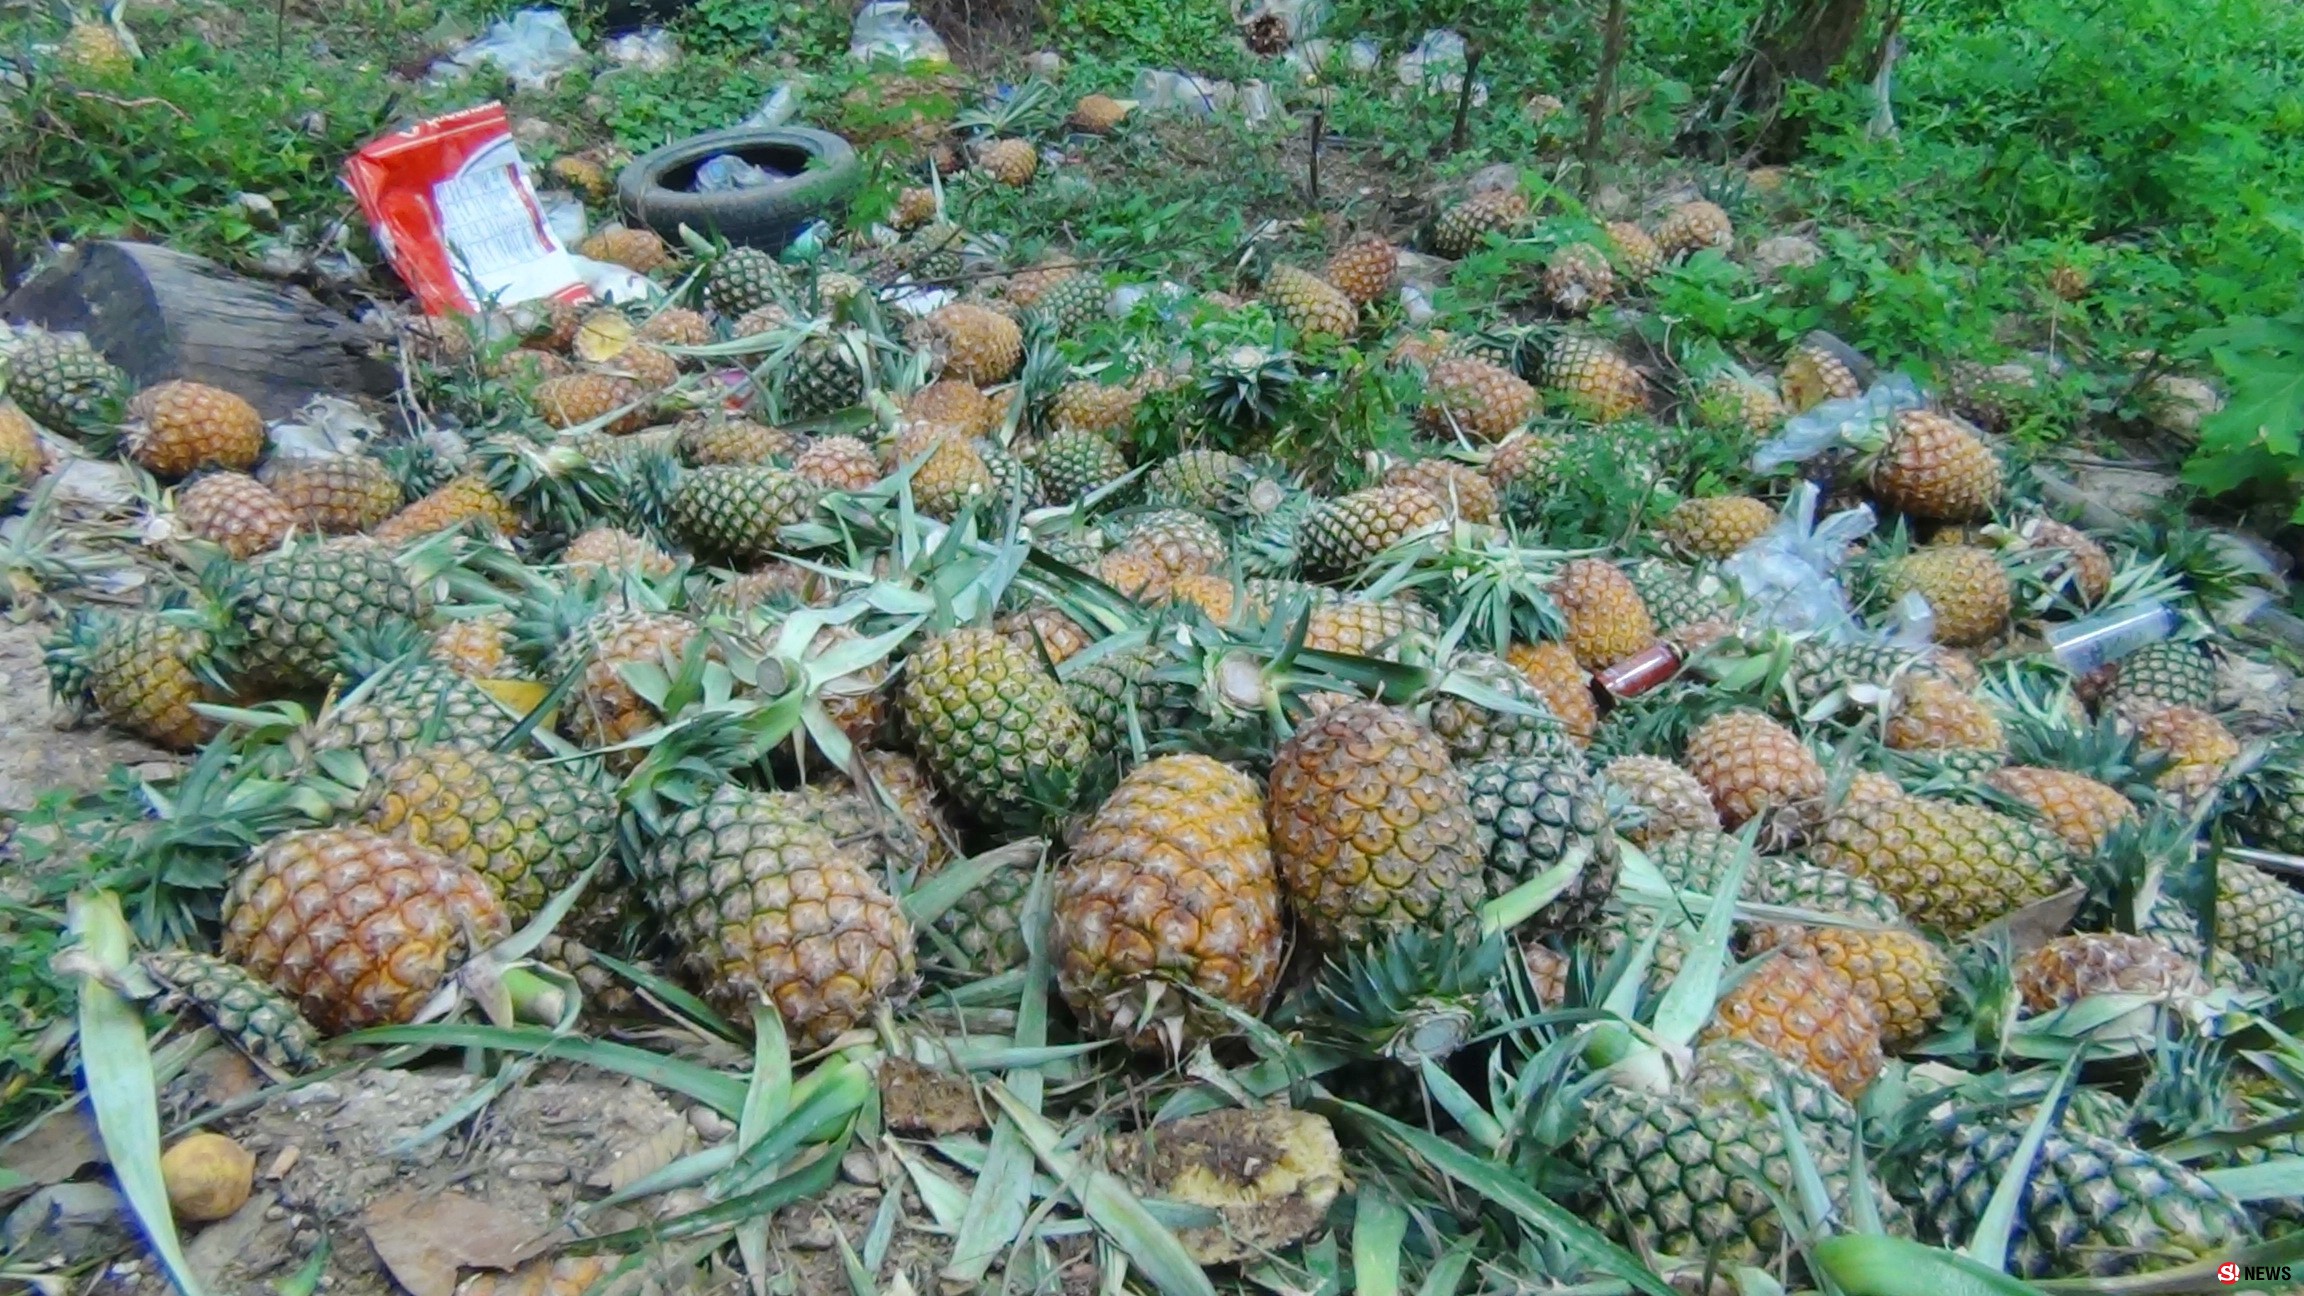 เคราะห์ซ้ำกรรมซัด ชาวไร่สับปะรด สุดช้ำราคาตก ซ้ำยังถูกช้างป่าบุกยึดพื้นที่